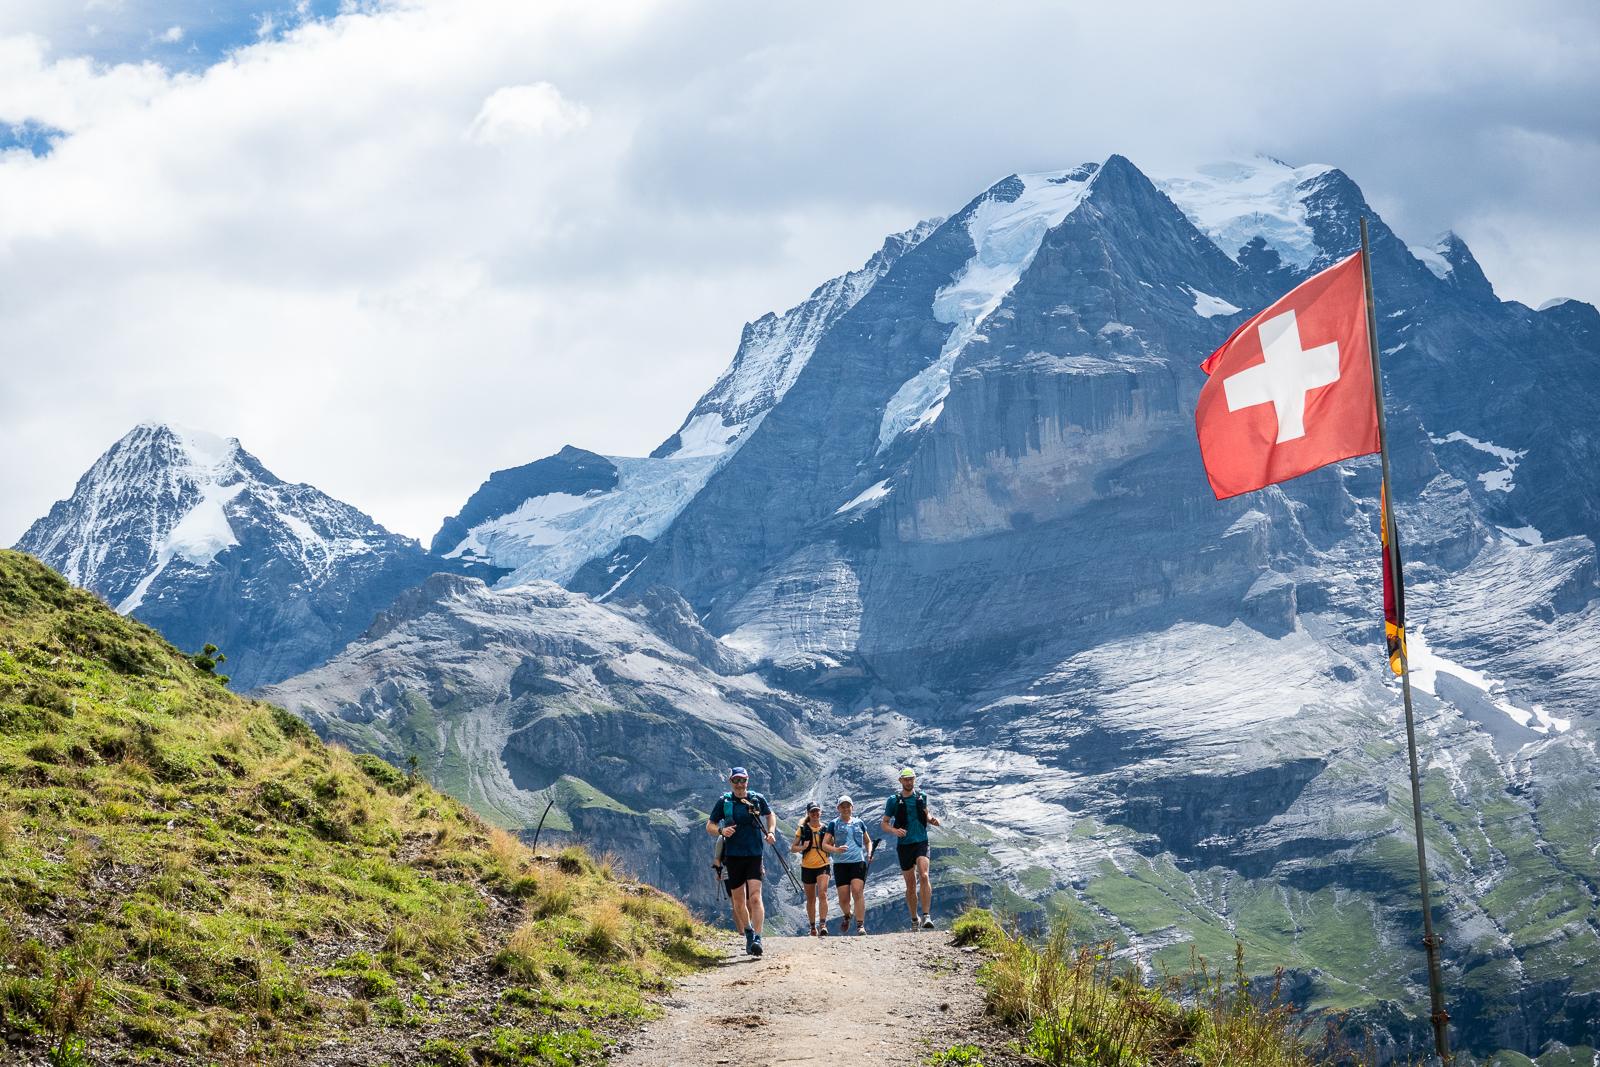 Trail Run with The Mirnavator in Switzerland!